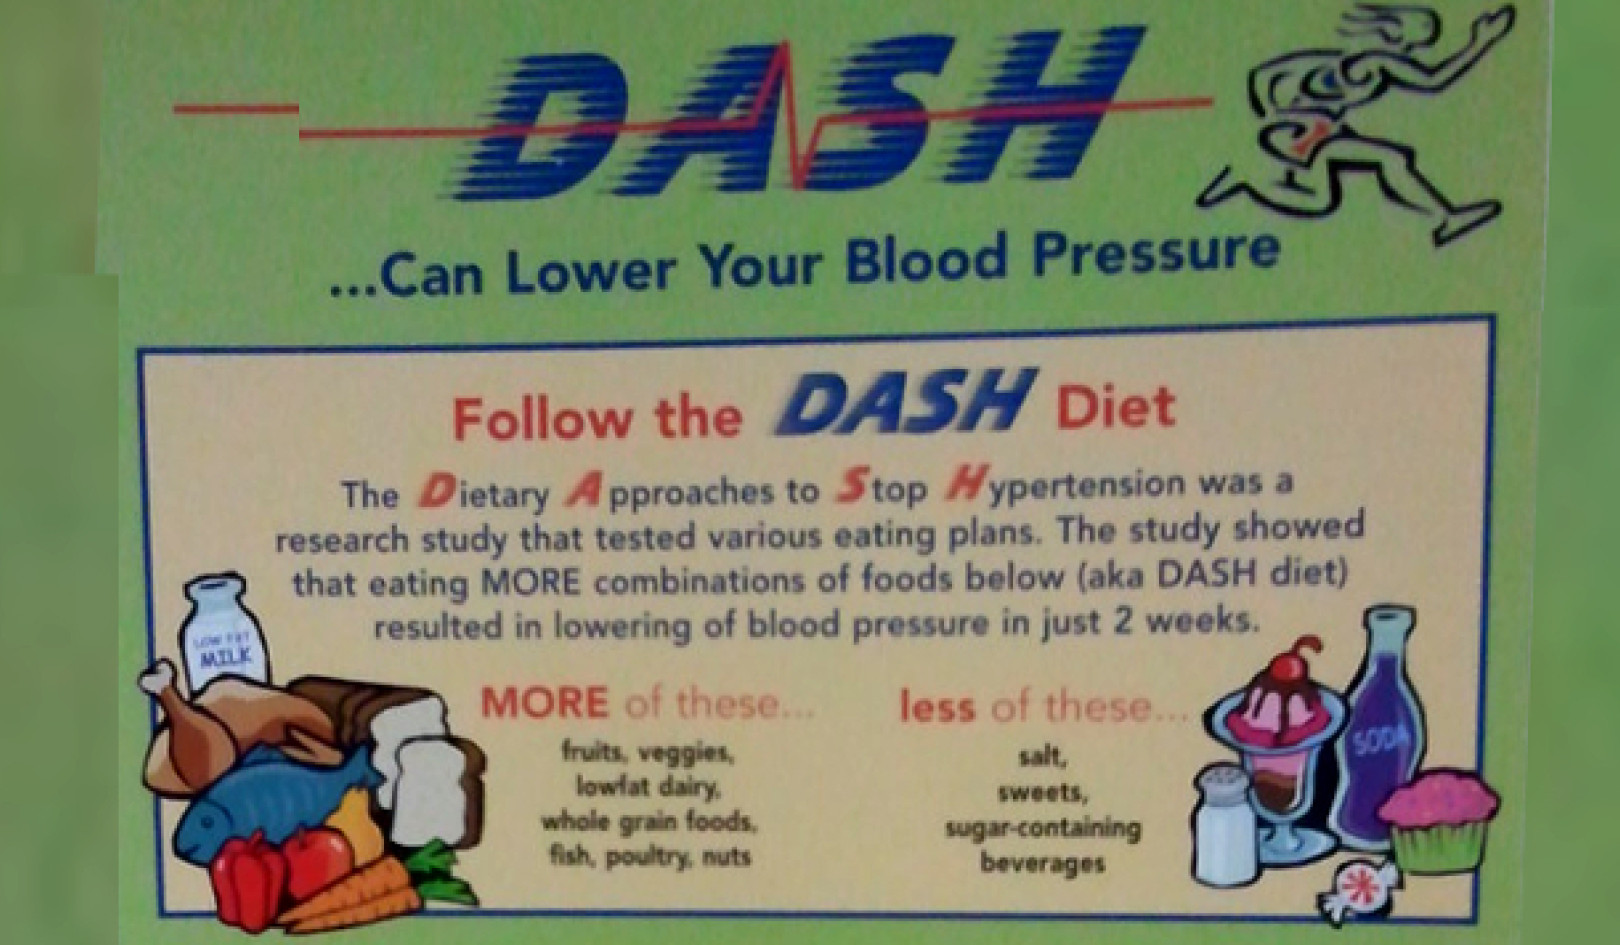 พลังของ Dash Diet: ตัวเปลี่ยนเกมสำหรับความทรงจำของผู้หญิง